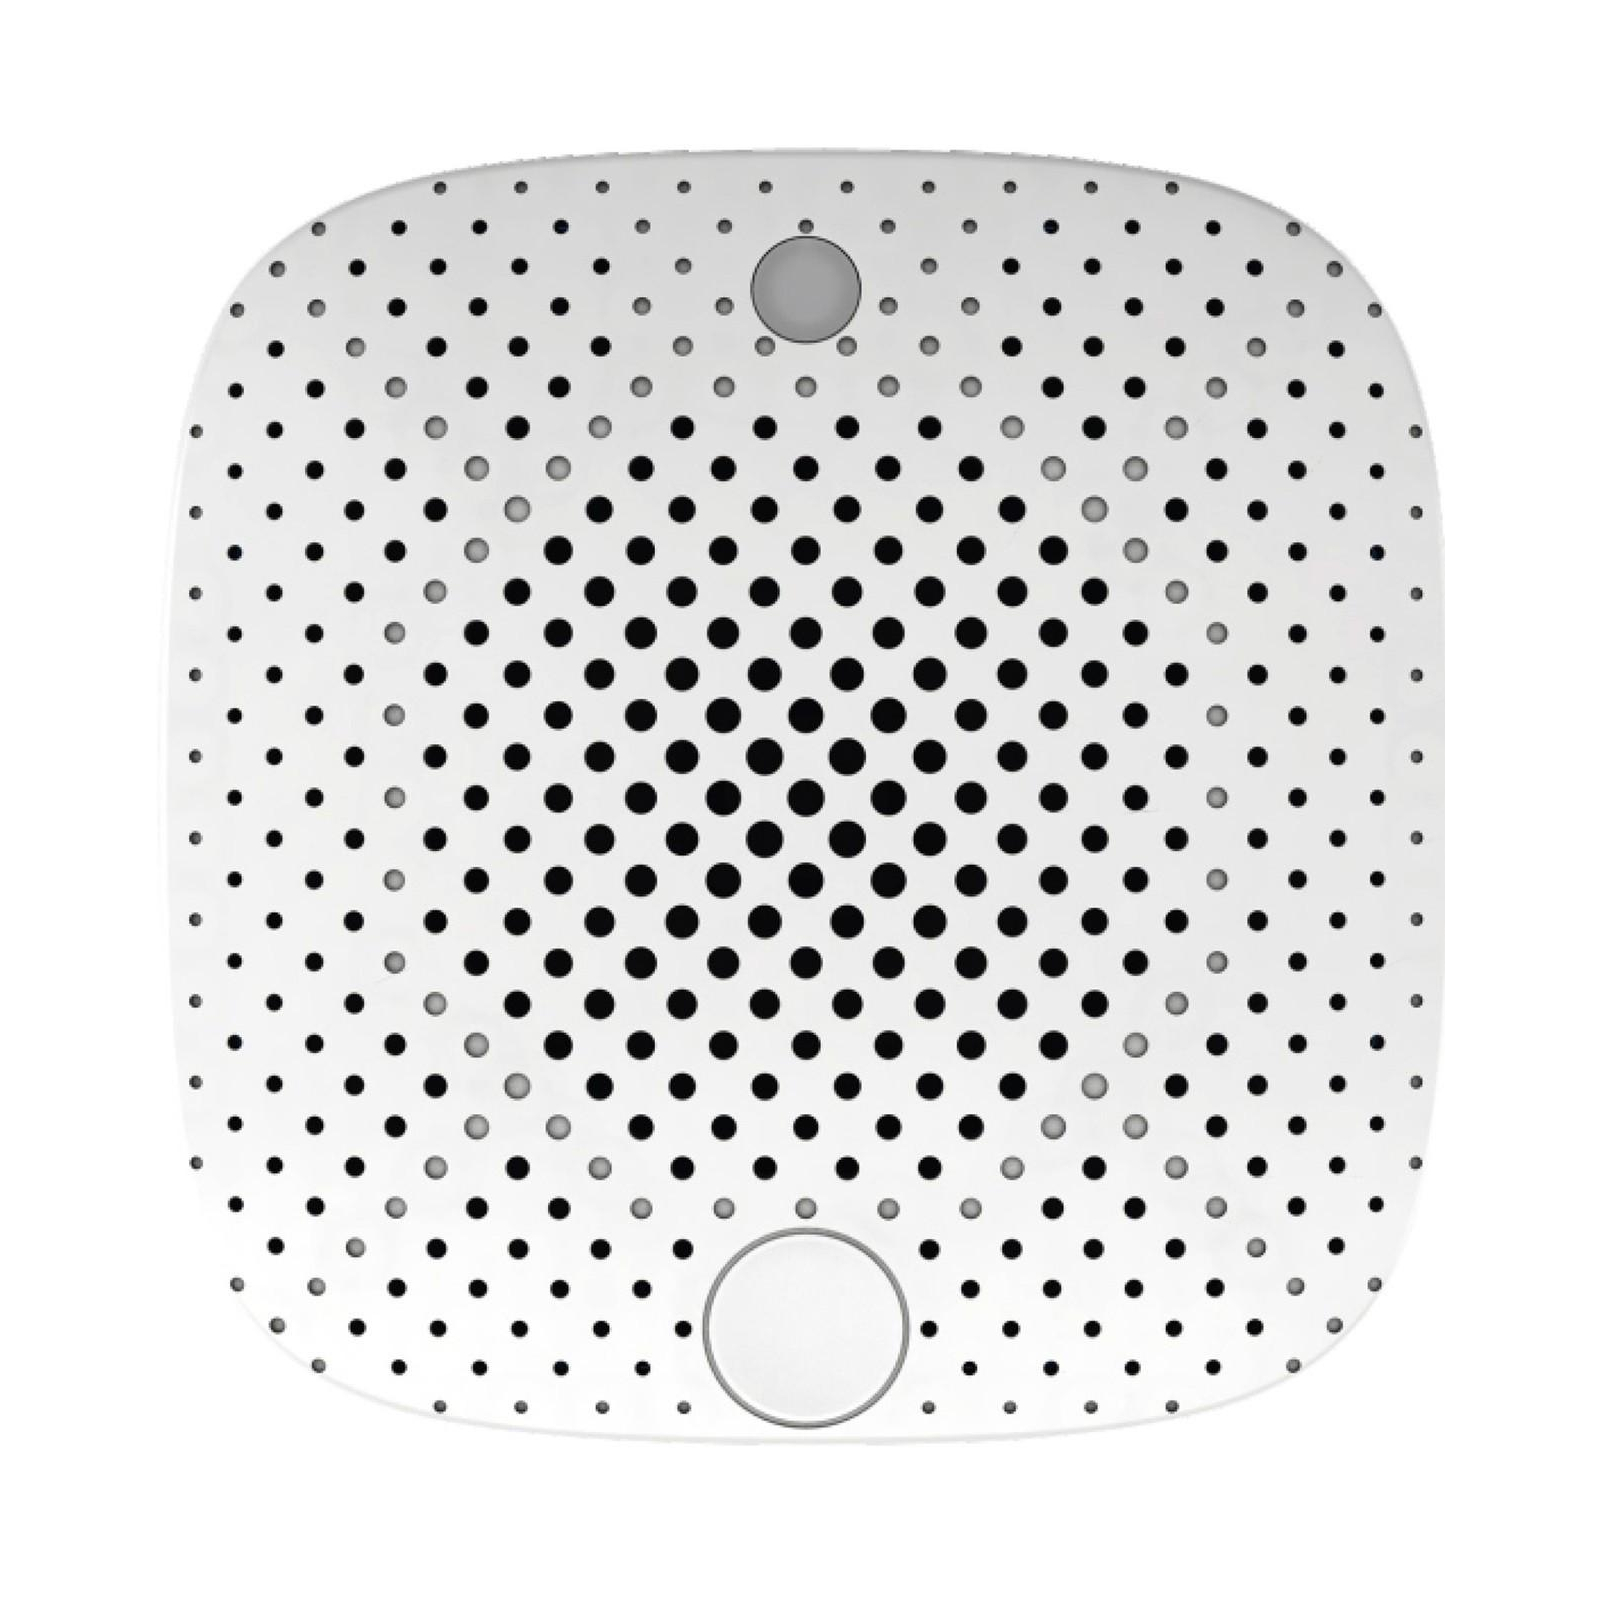 Комплект охранной сигнализации Nomi набор датчиков Smart Home (329732) изображение 5